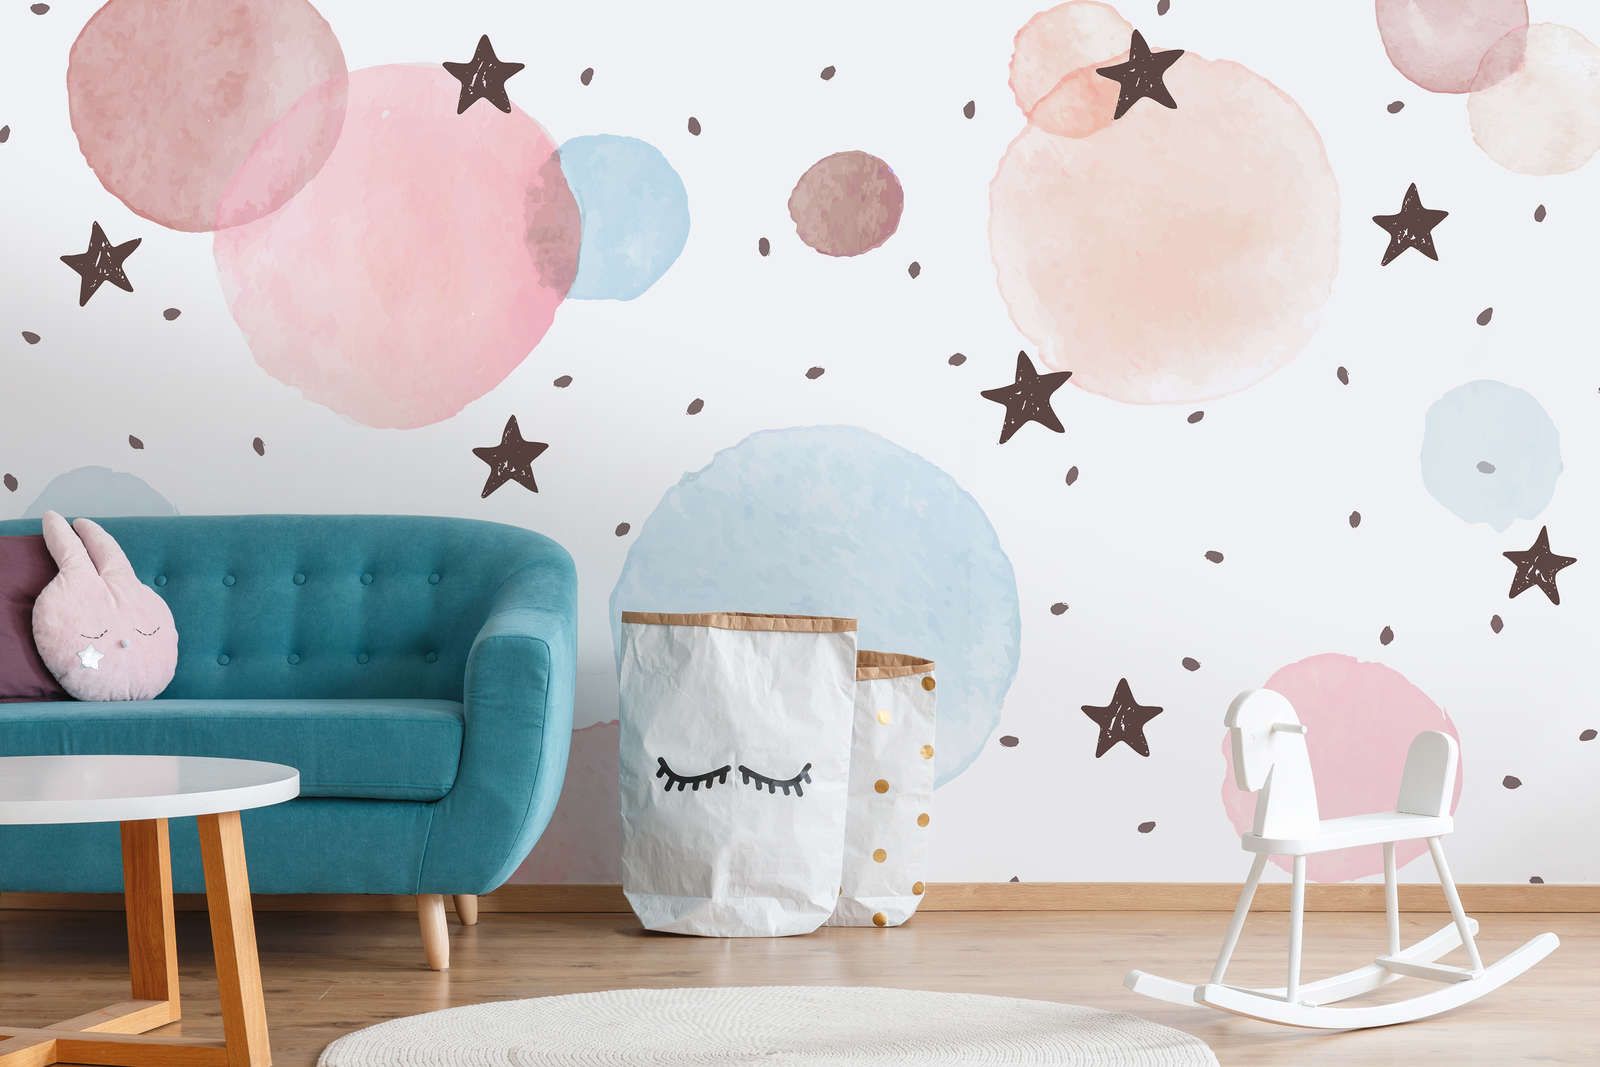             papiers peints à impression numérique pour chambre d'enfant avec étoiles, points et cercles - intissé lisse & mat
        